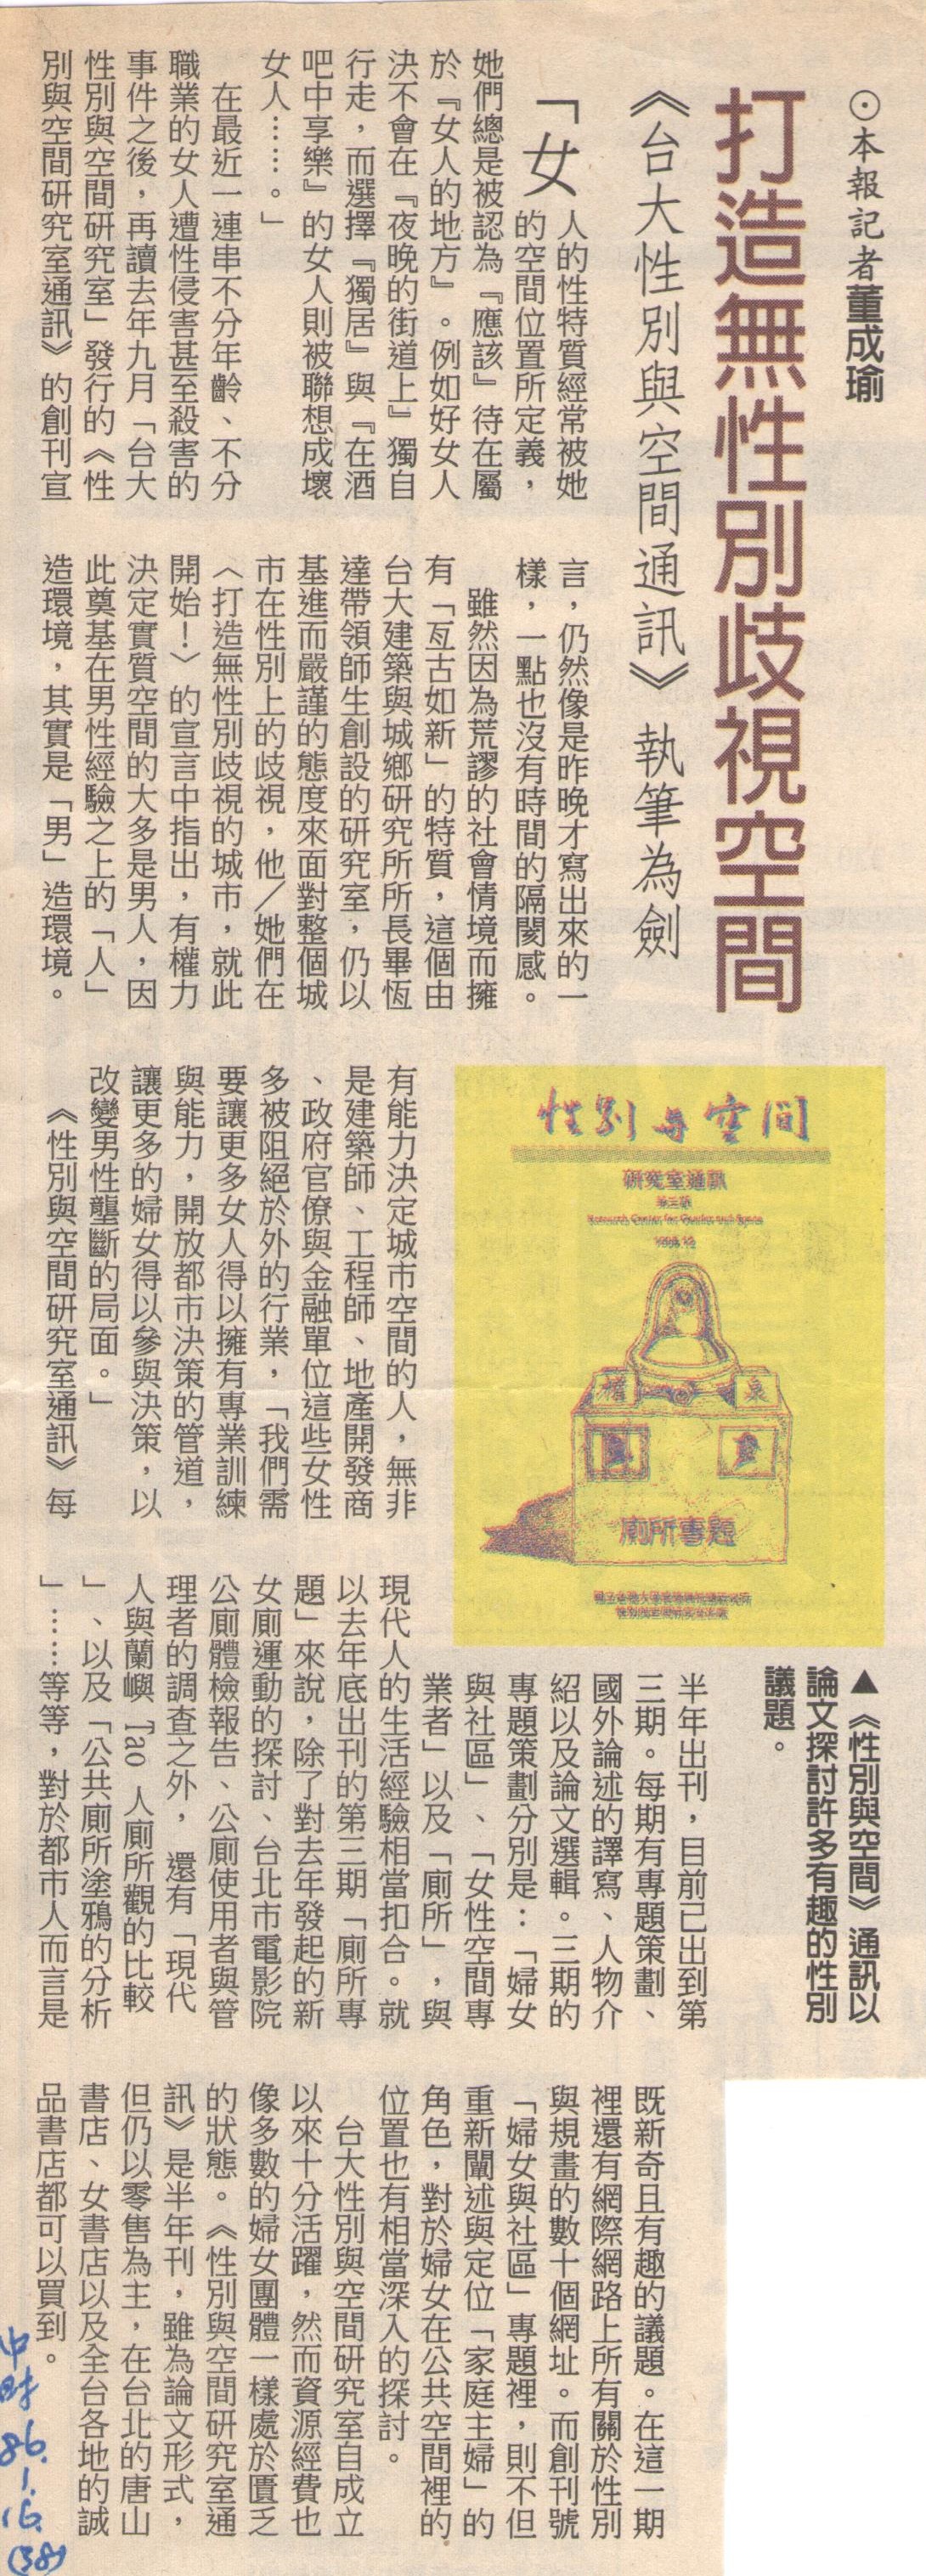 中國時報19970116